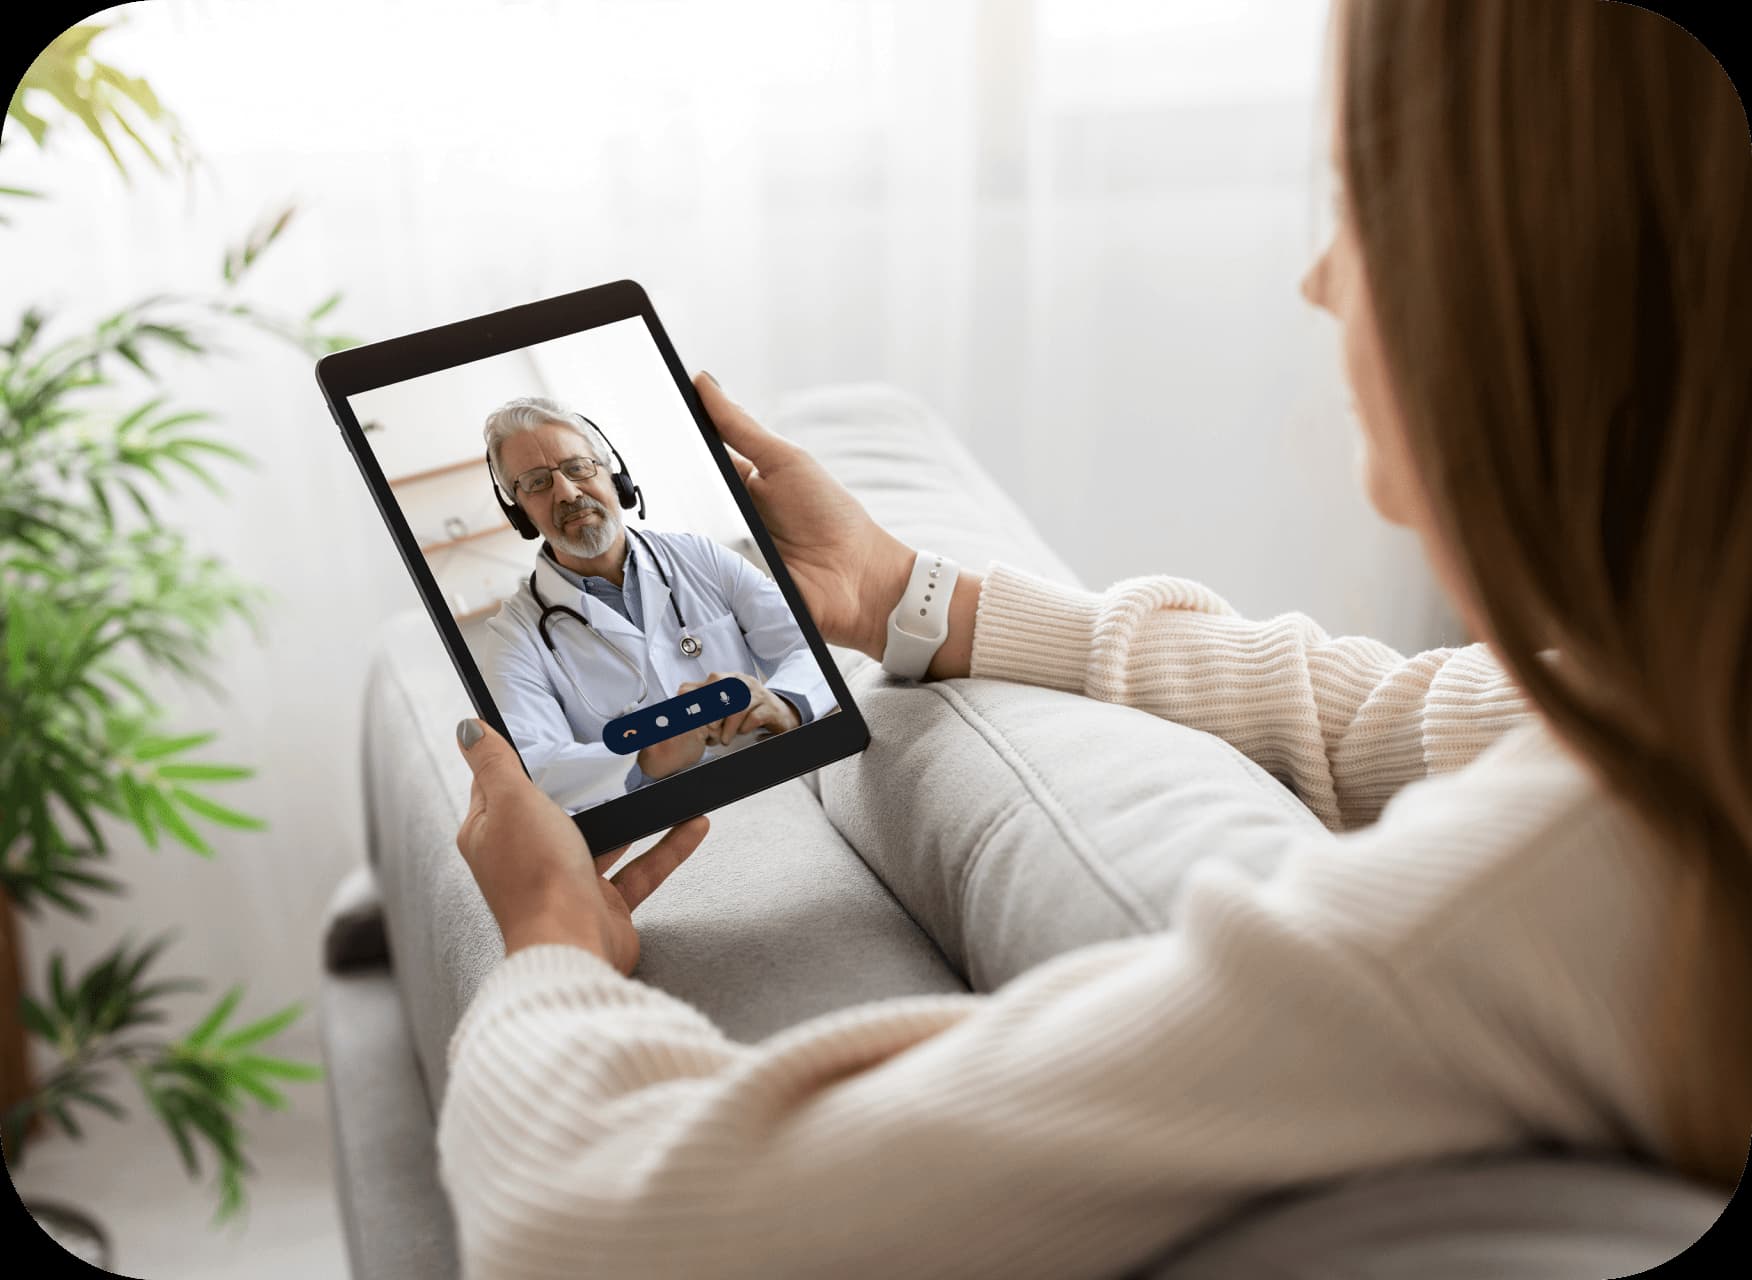 Пациентка проводит виртуальную консультацию со своим врачом через планшет.